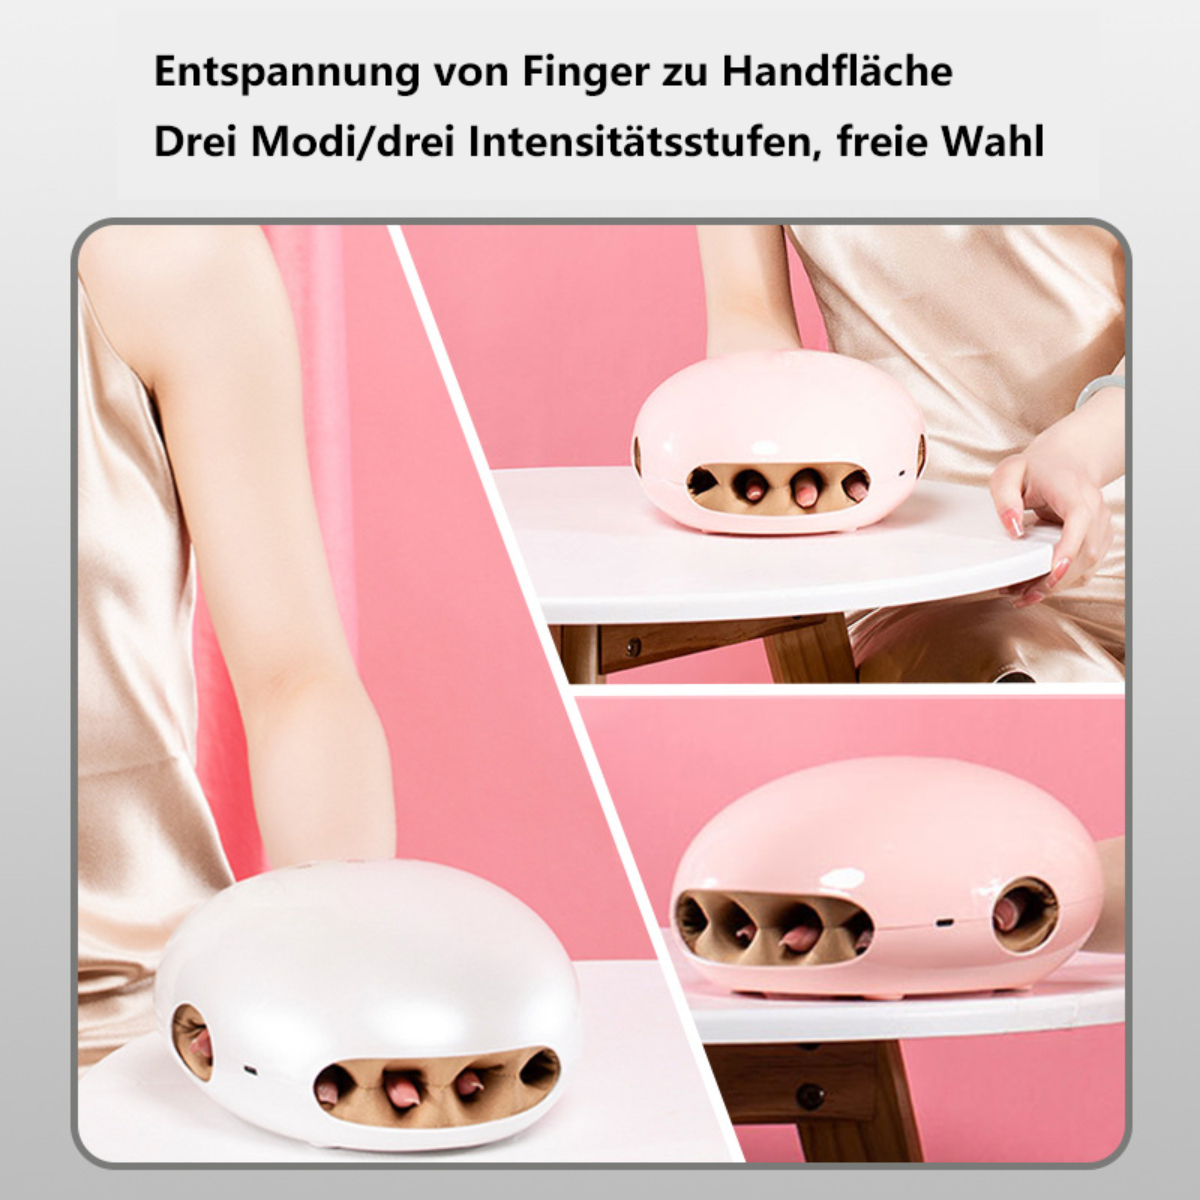 BYTELIKE Handmassagegerät Handmassagegerät Hot Fingergelenk Physiotherapie Palm Airbag Handmassagegerät Massager Kneten